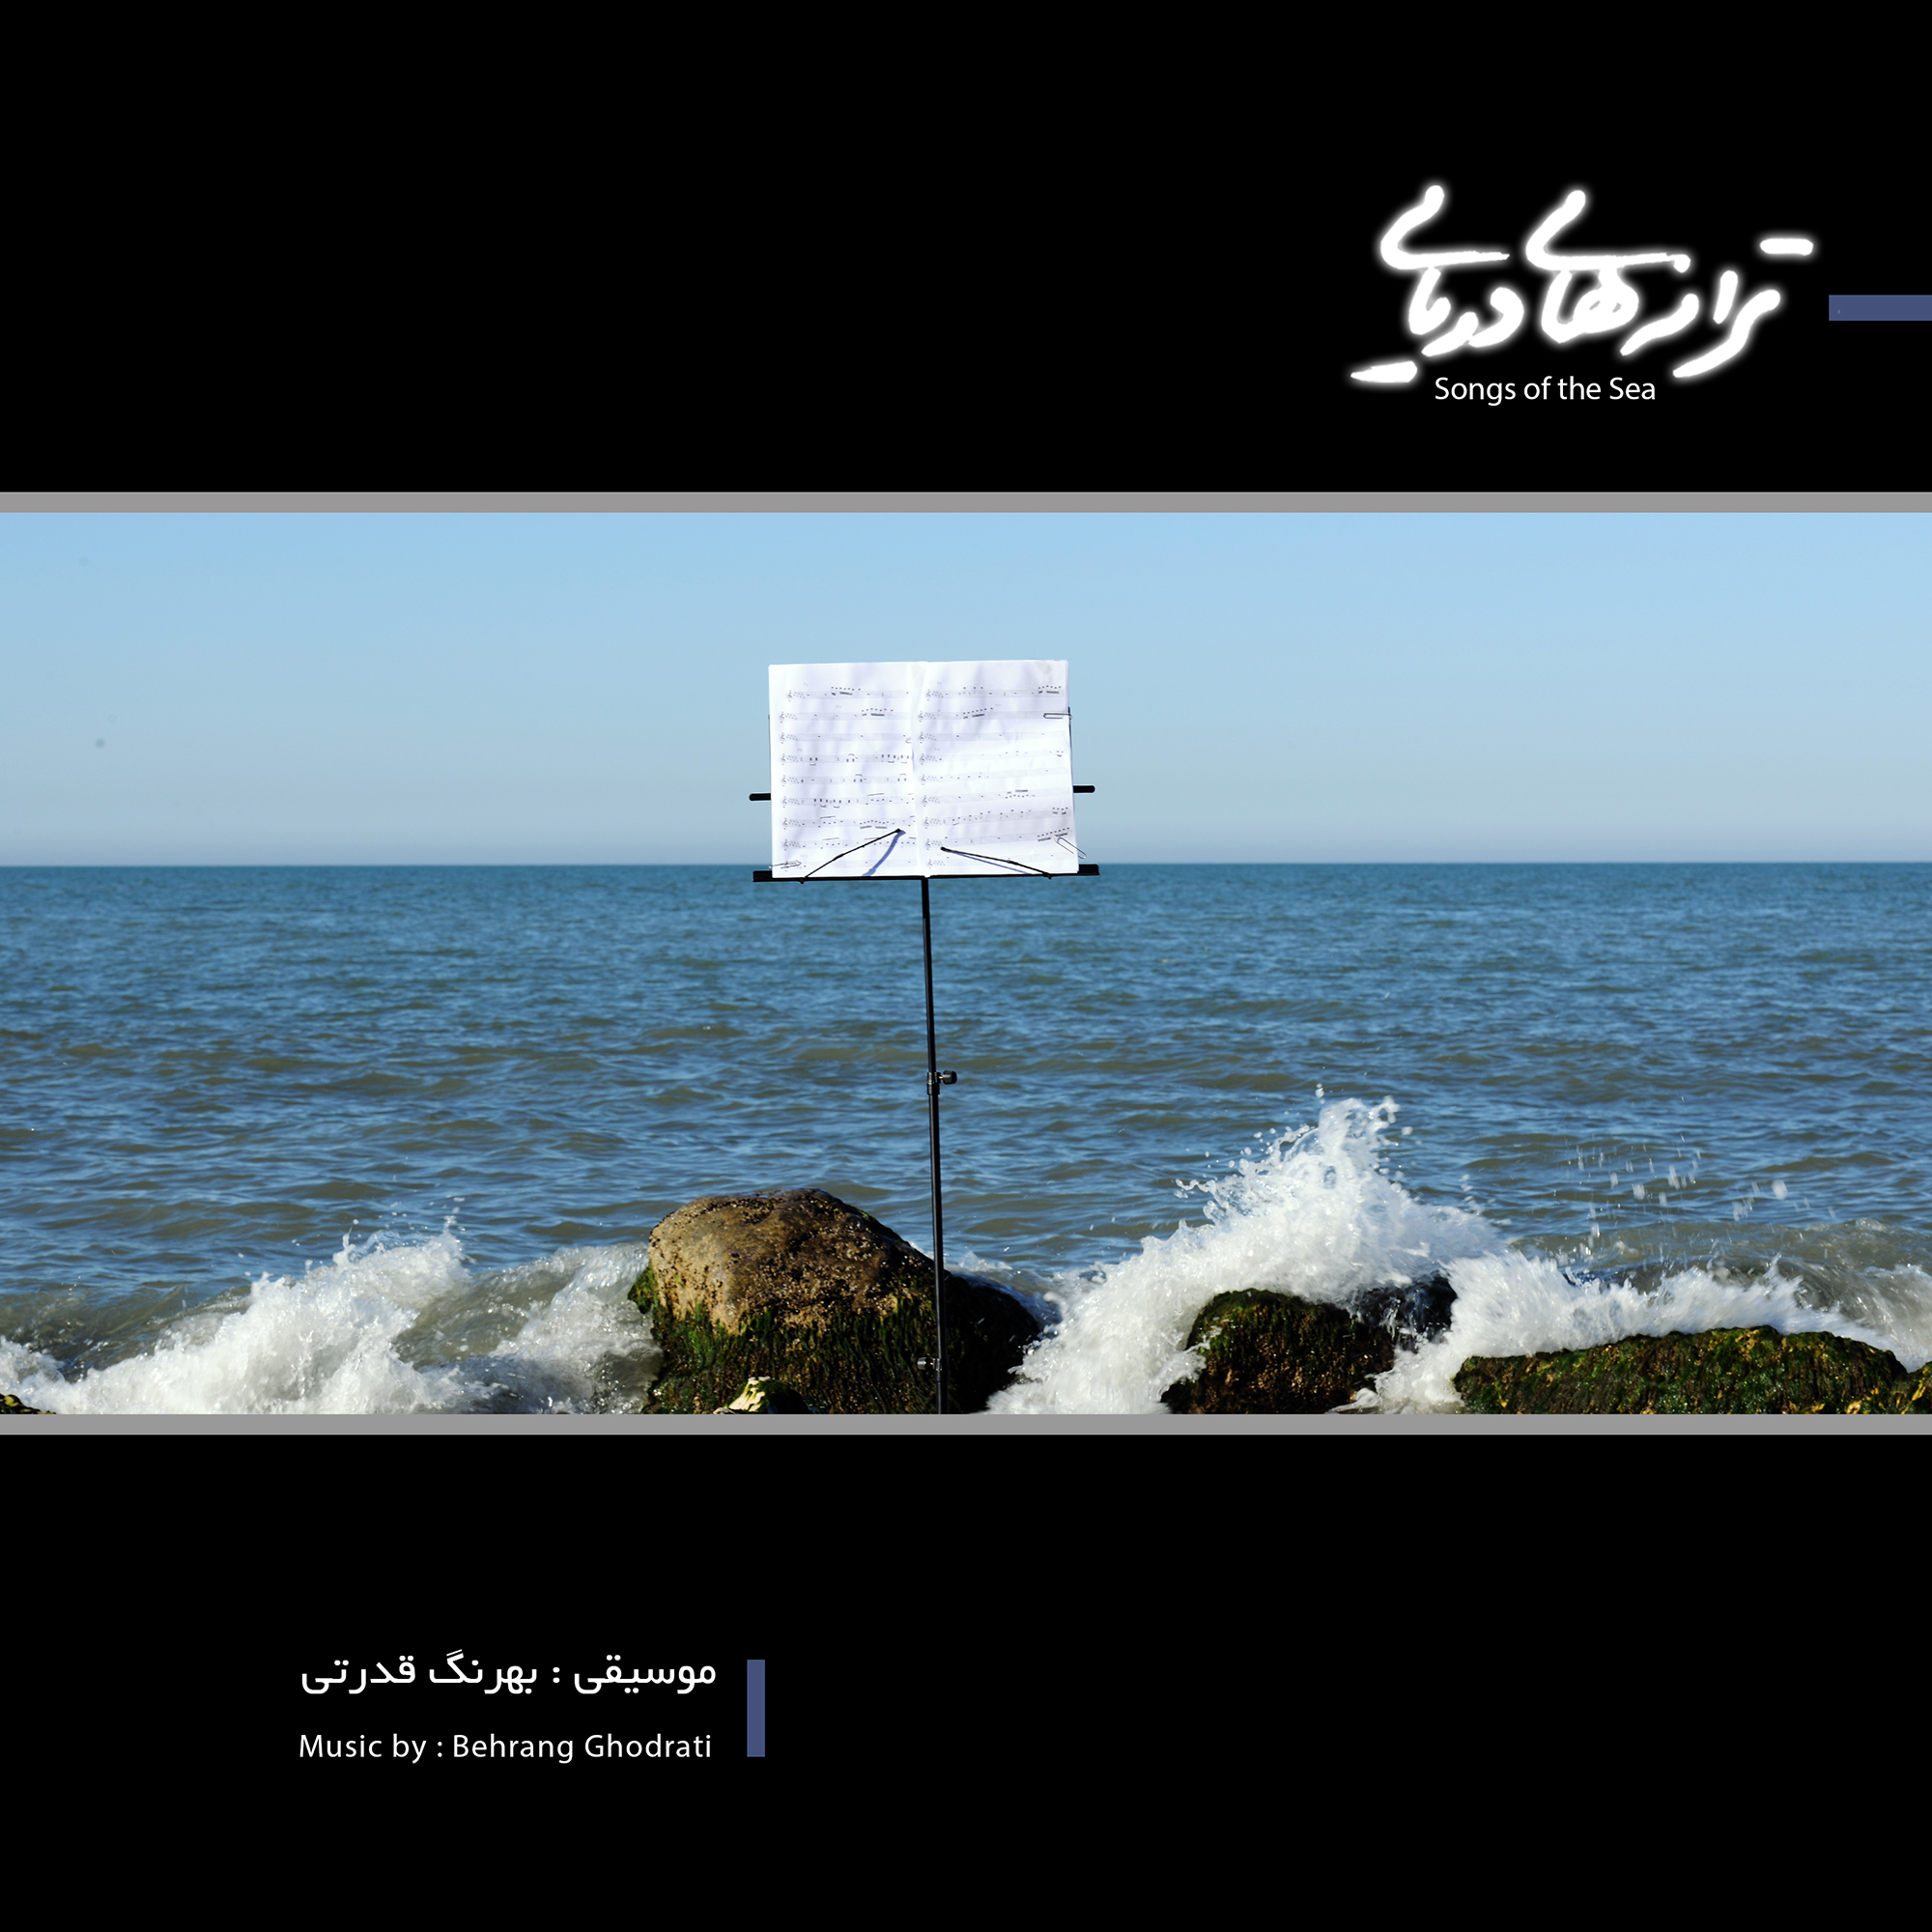  آلبوم موسیقی ترانه های دریایی اثر بهرنگ قدرتی